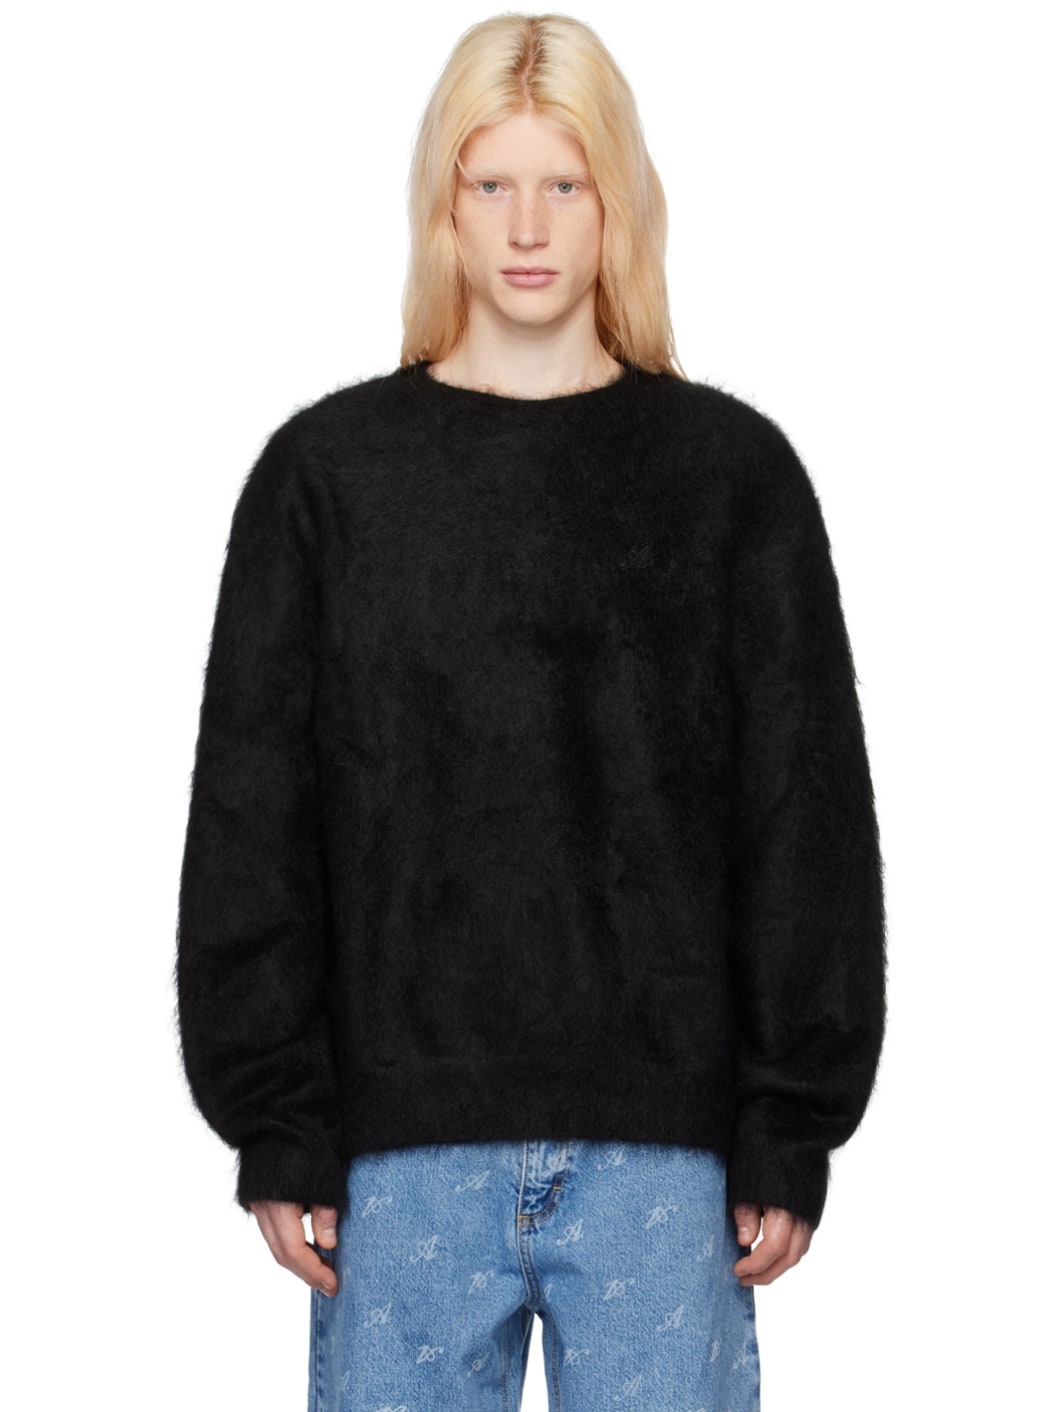 Black Primary Sweater - 1